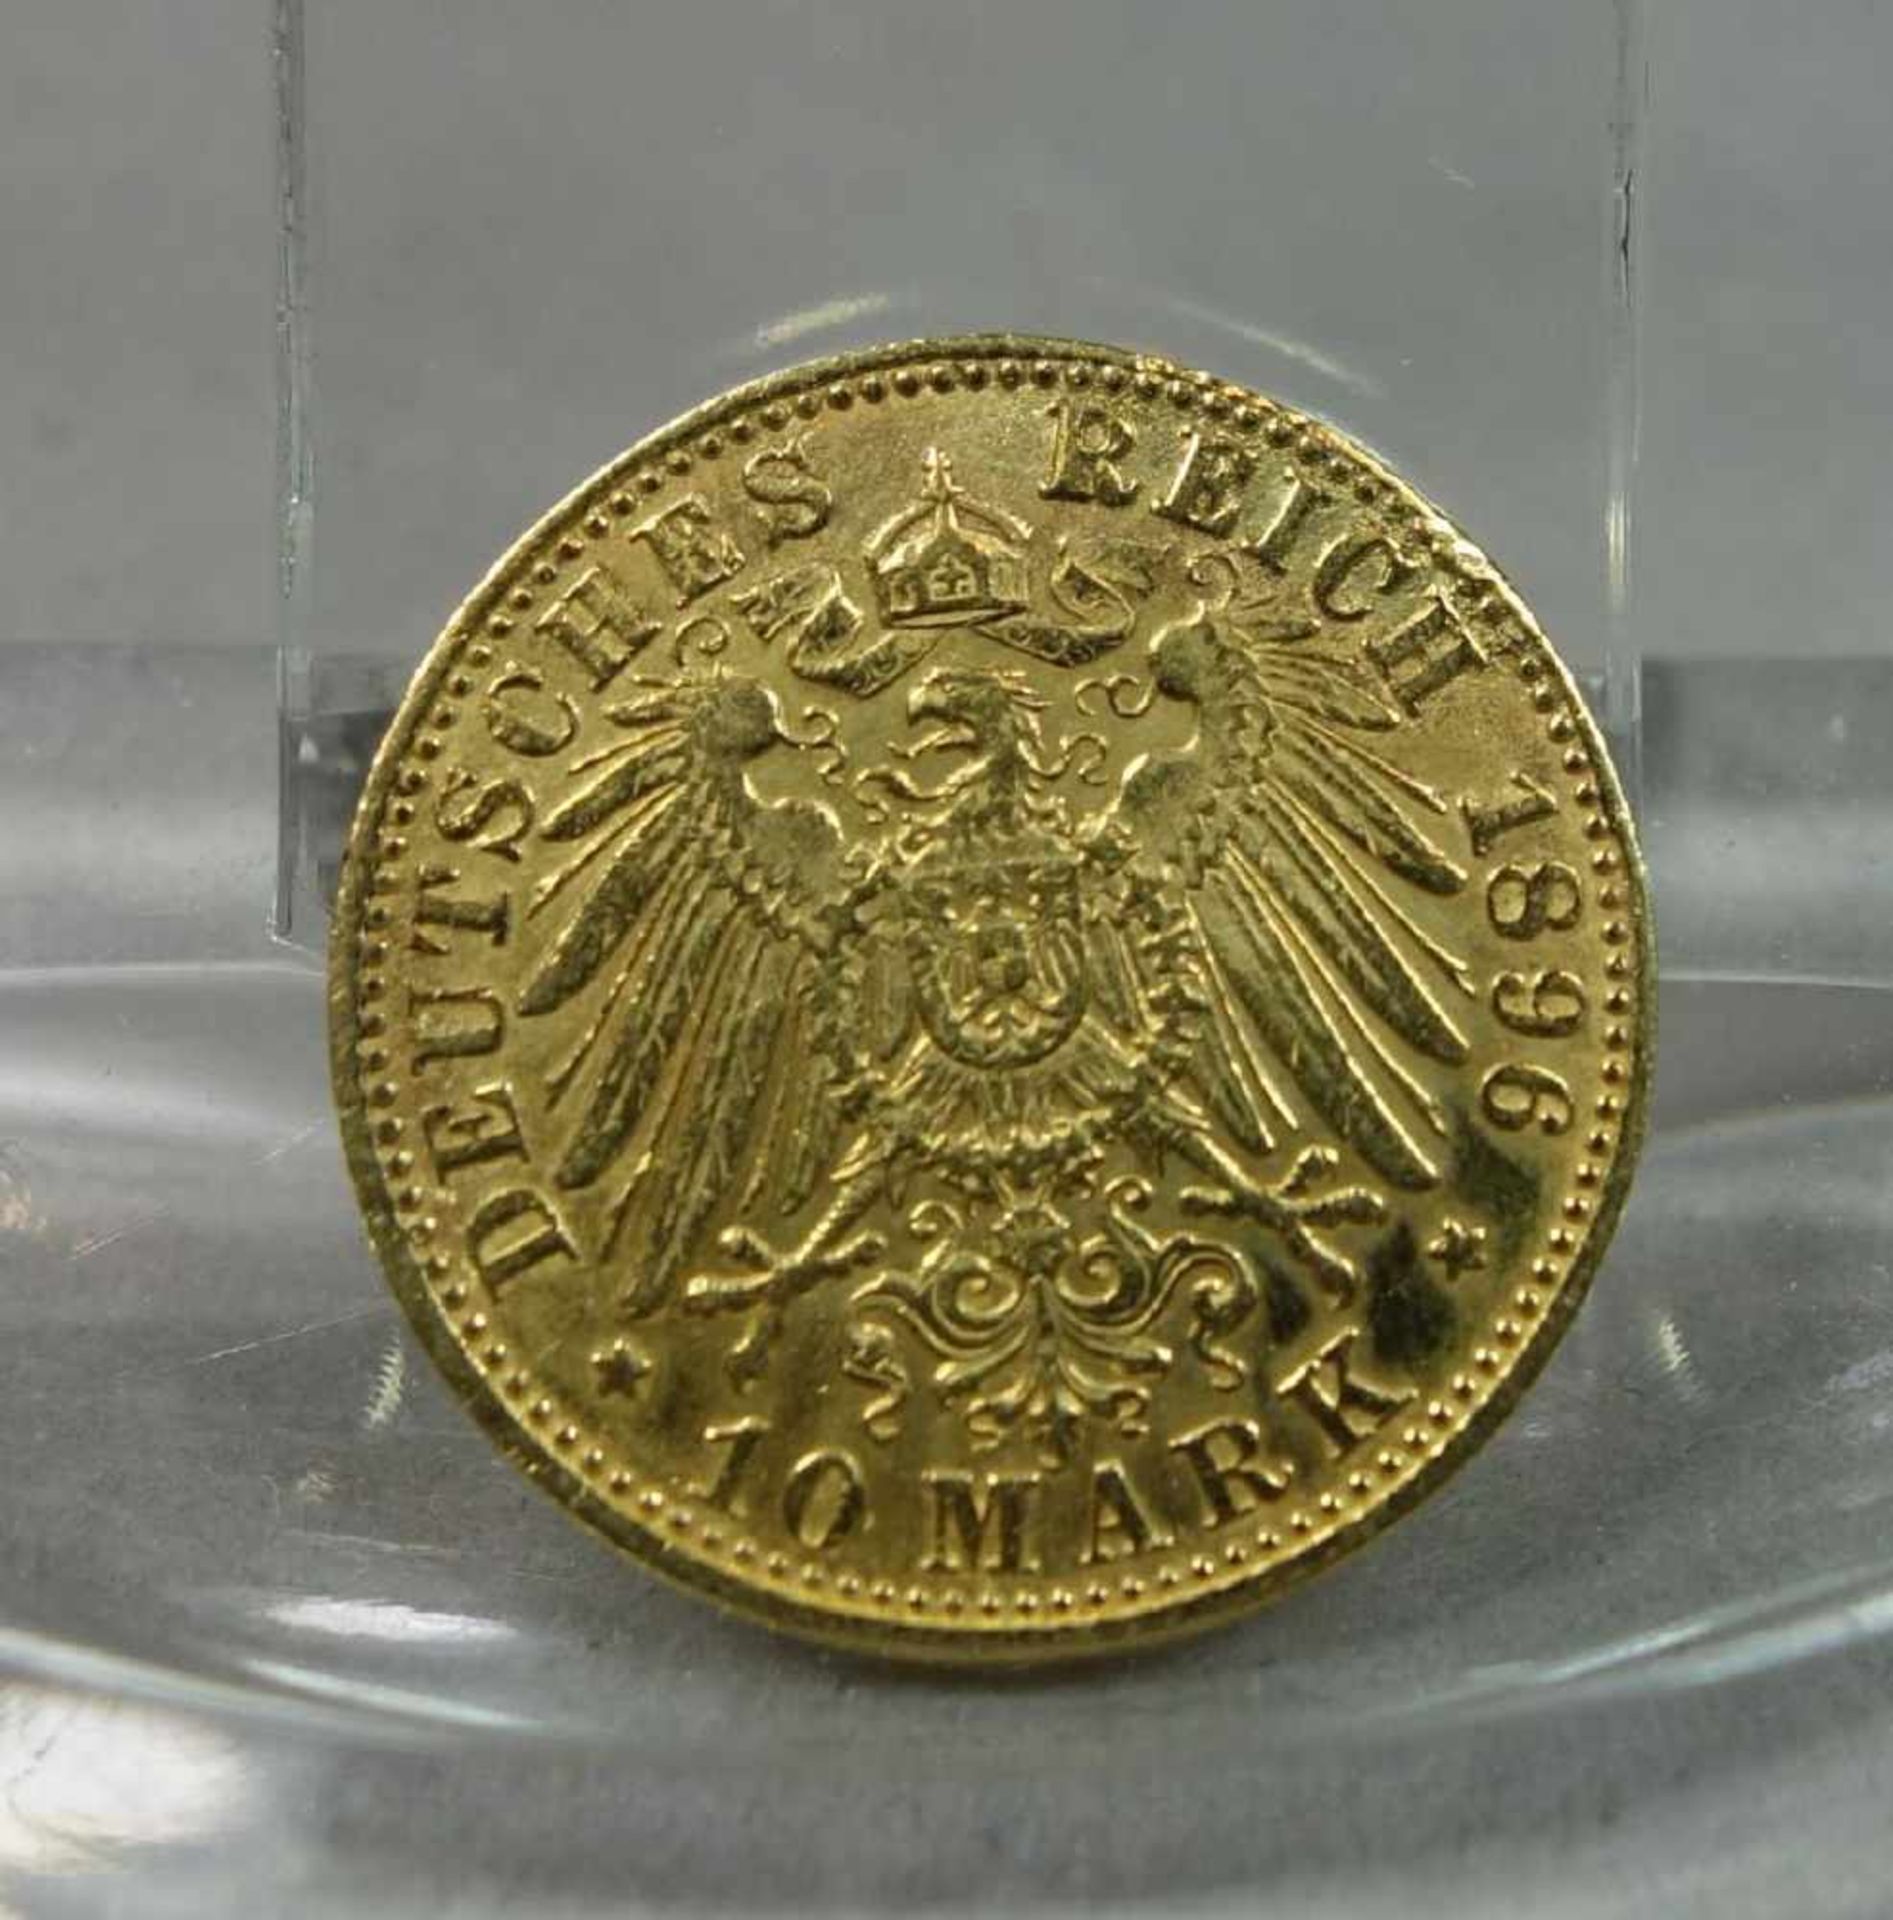 GOLDMÜNZE: DEUTSCHES REICH - 10 MARK / gold coin, Kaiserreich / Preußen, 1896, 3,8 Gramm, 900er